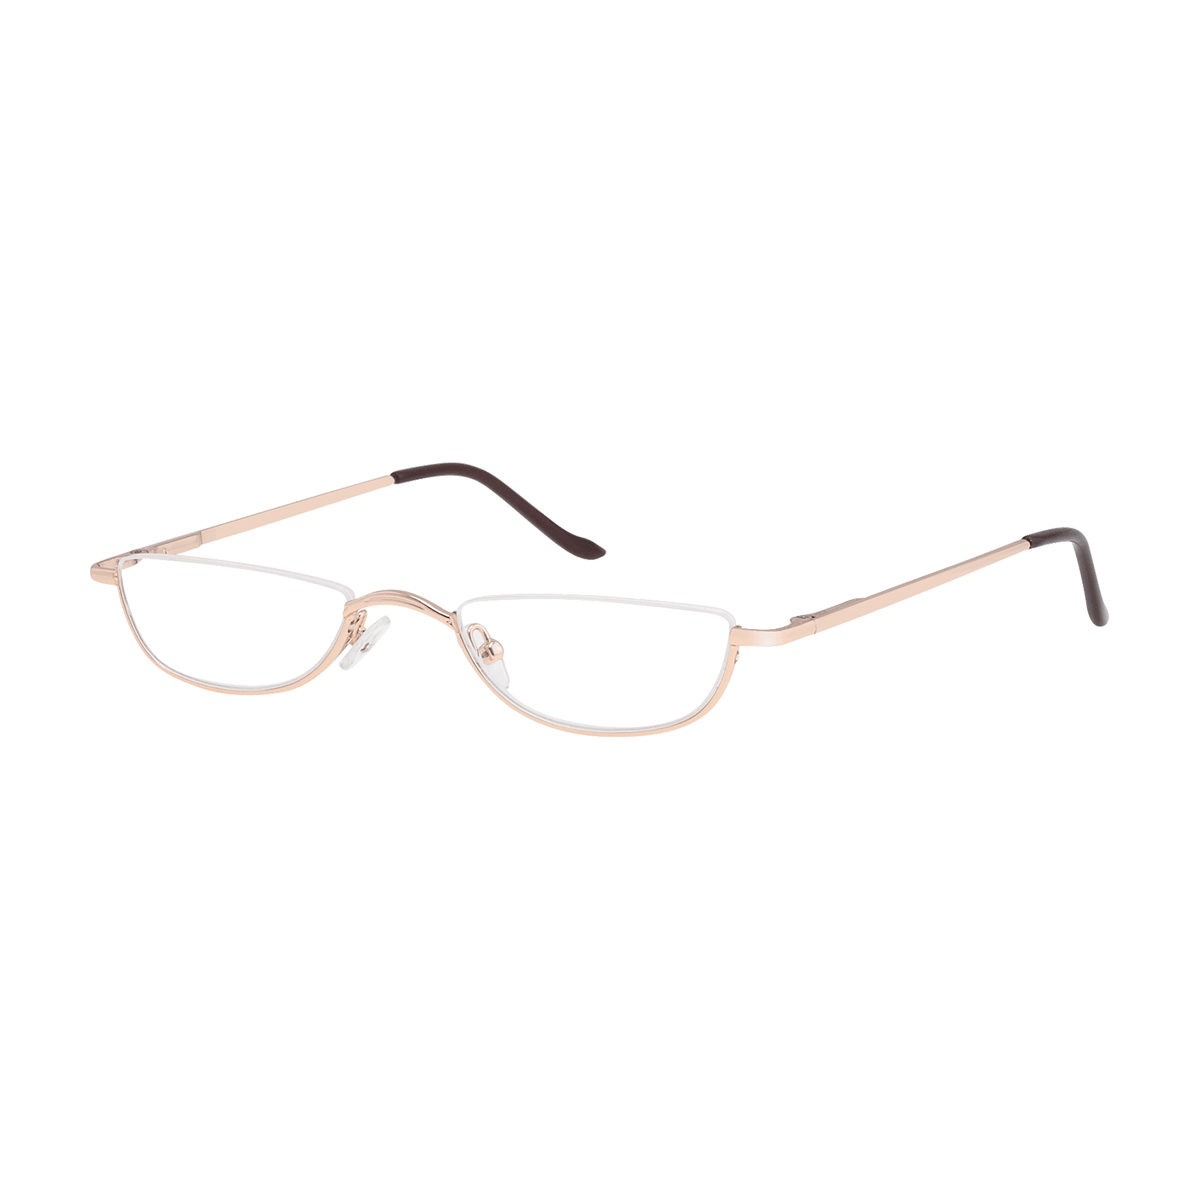 Daphnis - Rectangle Gold Reading Glasses for Men & Women